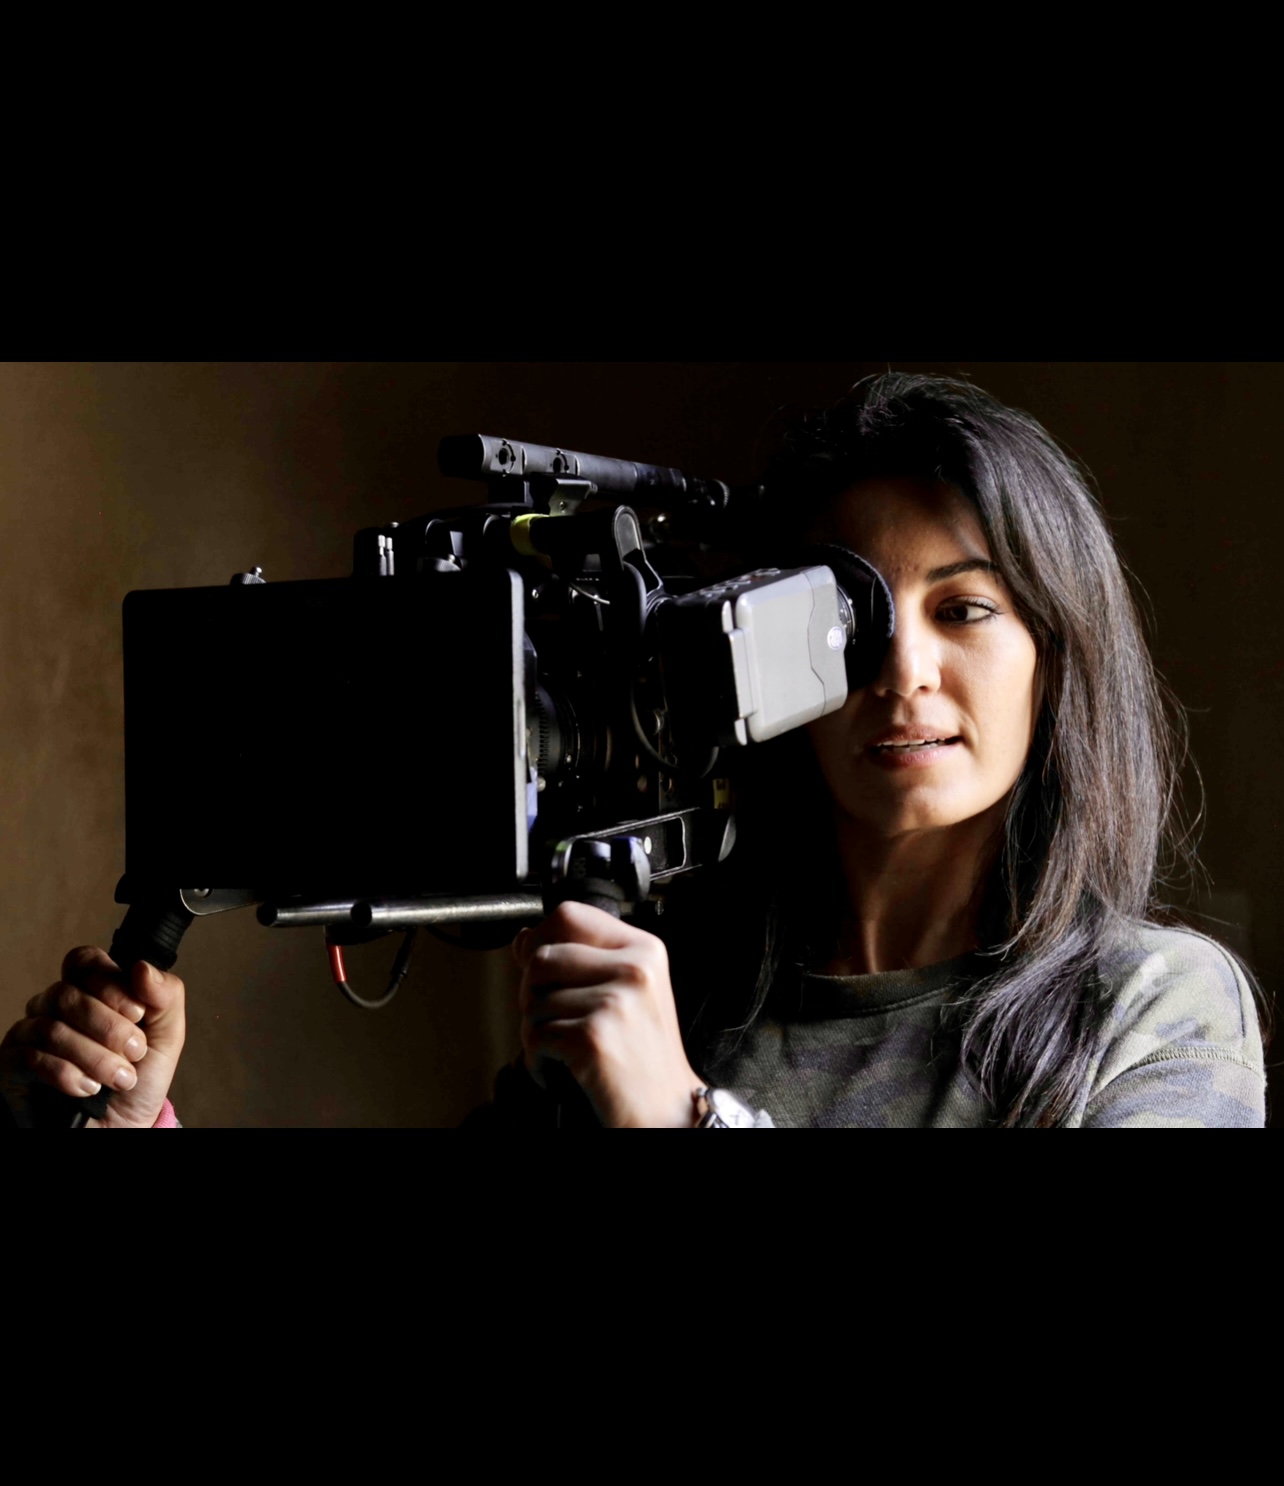 Le cinéma intimiste de Maryam Touzani capture une femme tenant une caméra sur un fond sombre.